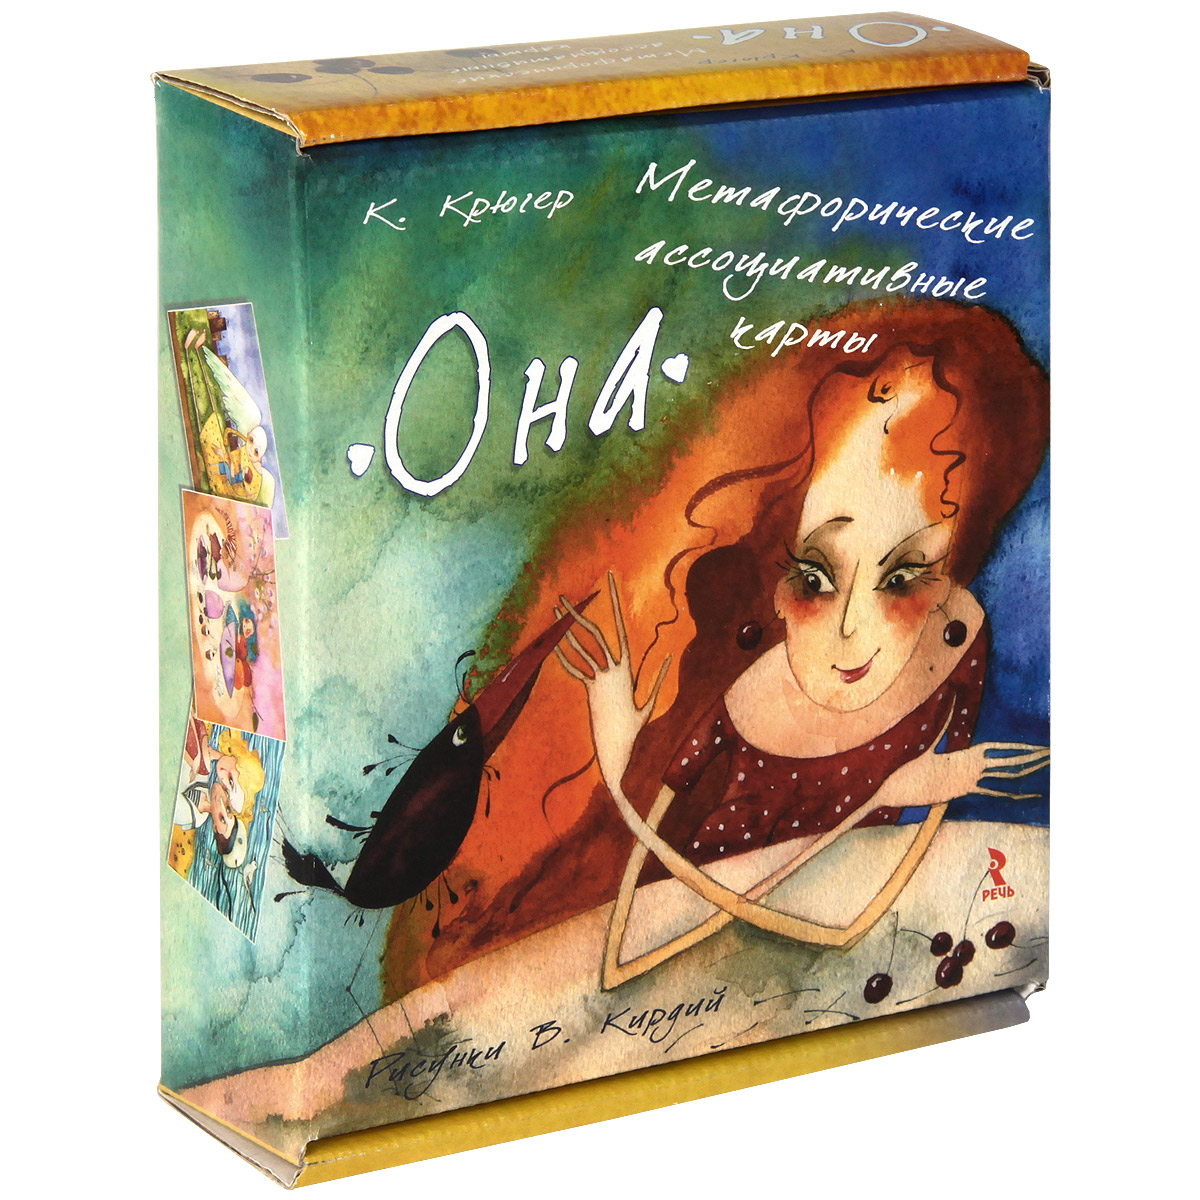 Книга Метафорические ассоциативные карты "Она" - купить книгу метафорические ассоциативные карты "она" от К. Крюгер в книжном интернет магазине OZON.ru с доставкой по выгодной цене